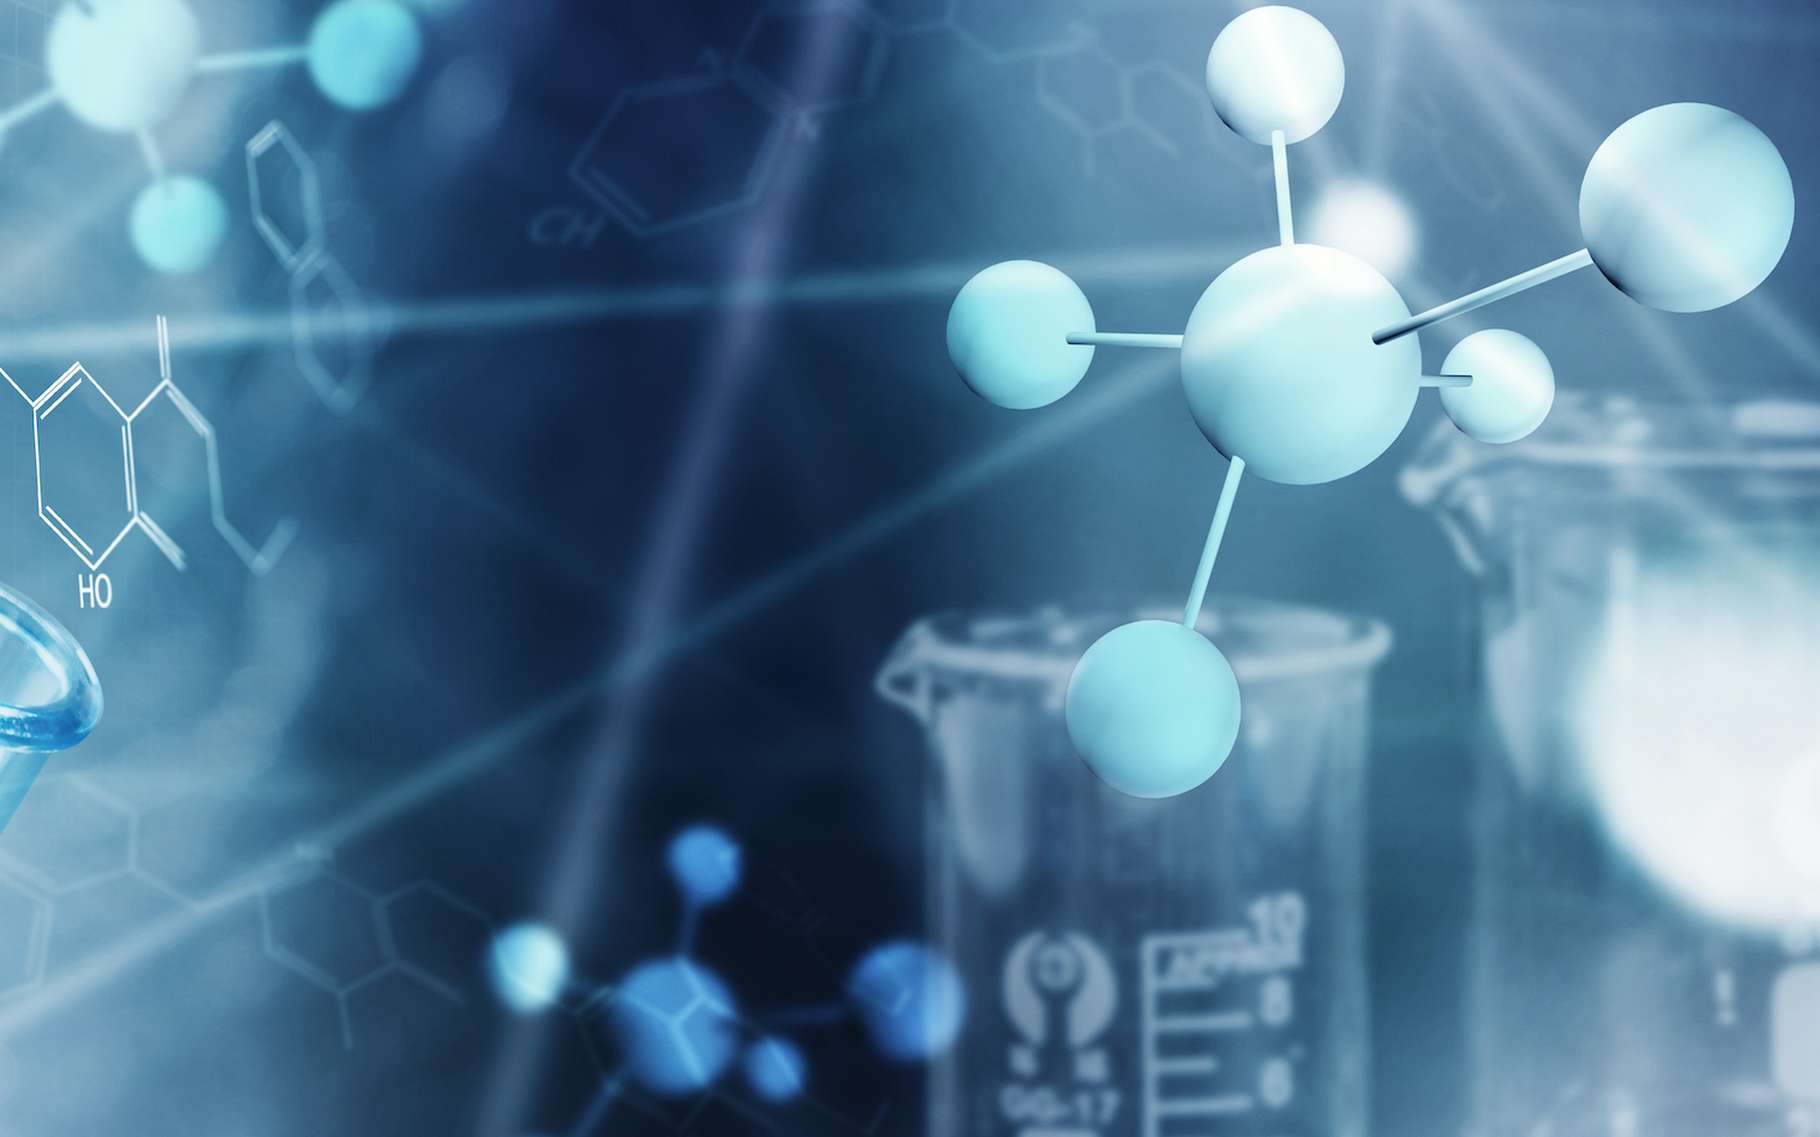 La formule développée renseigne sur l’arrangement des atomes qui constituent une molécule. © m.mphoto, Adobe Stock